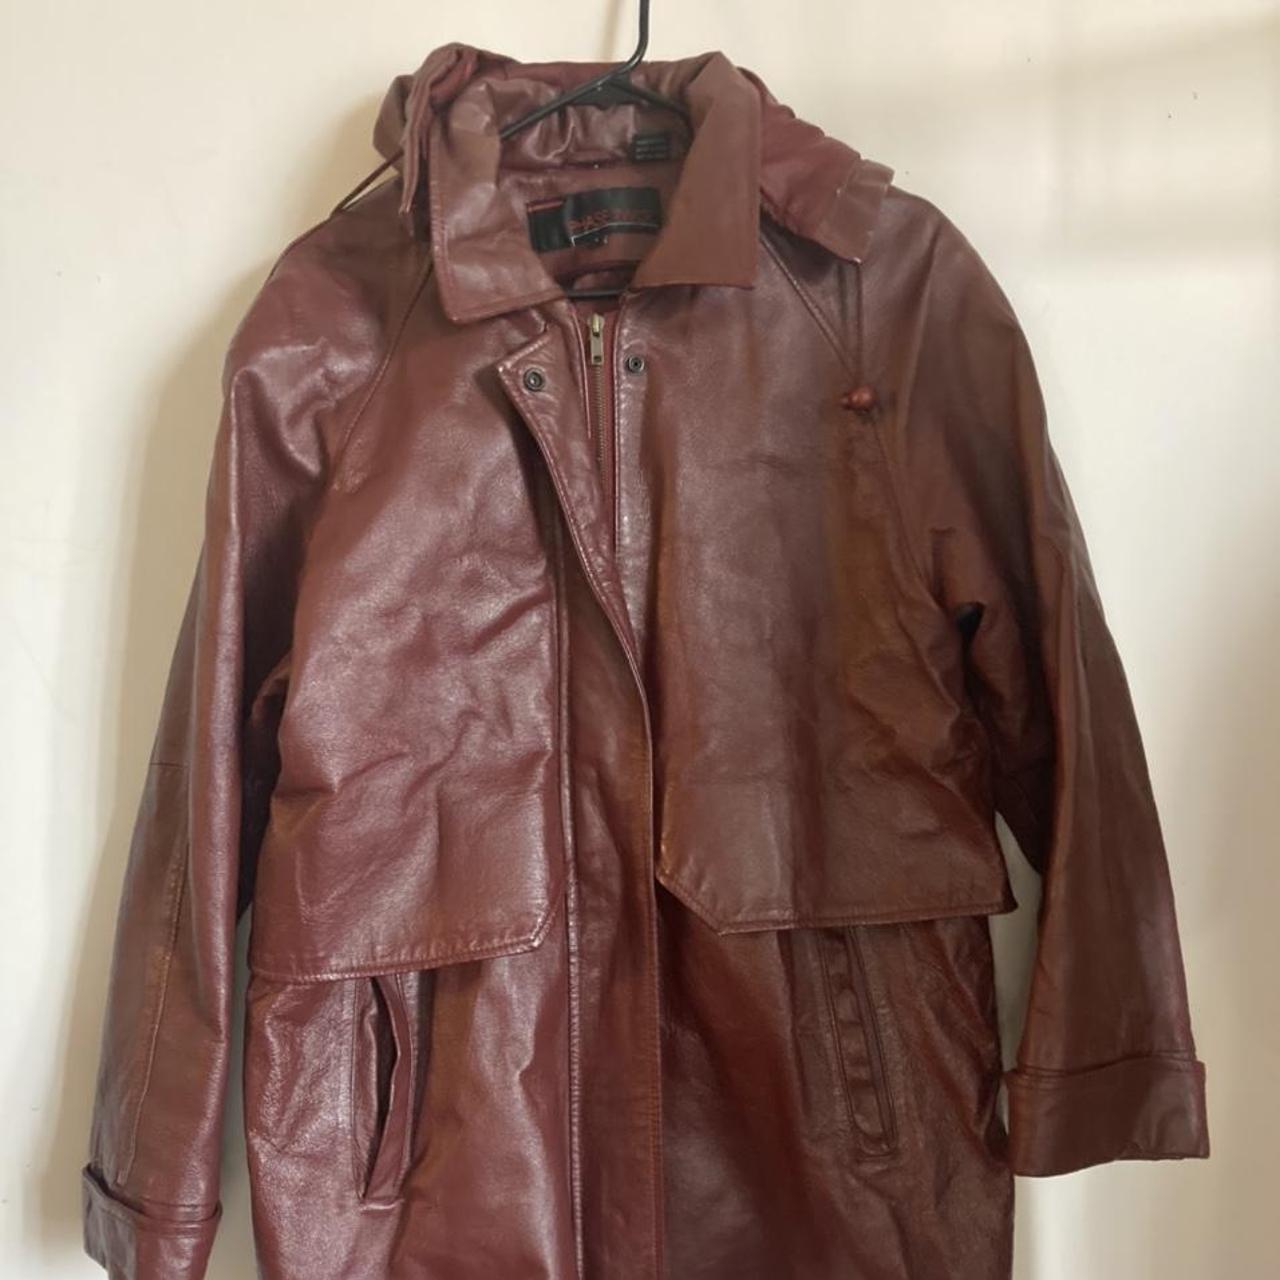 Product Image 1 - Phase Two 
Vintage Leather Jacket